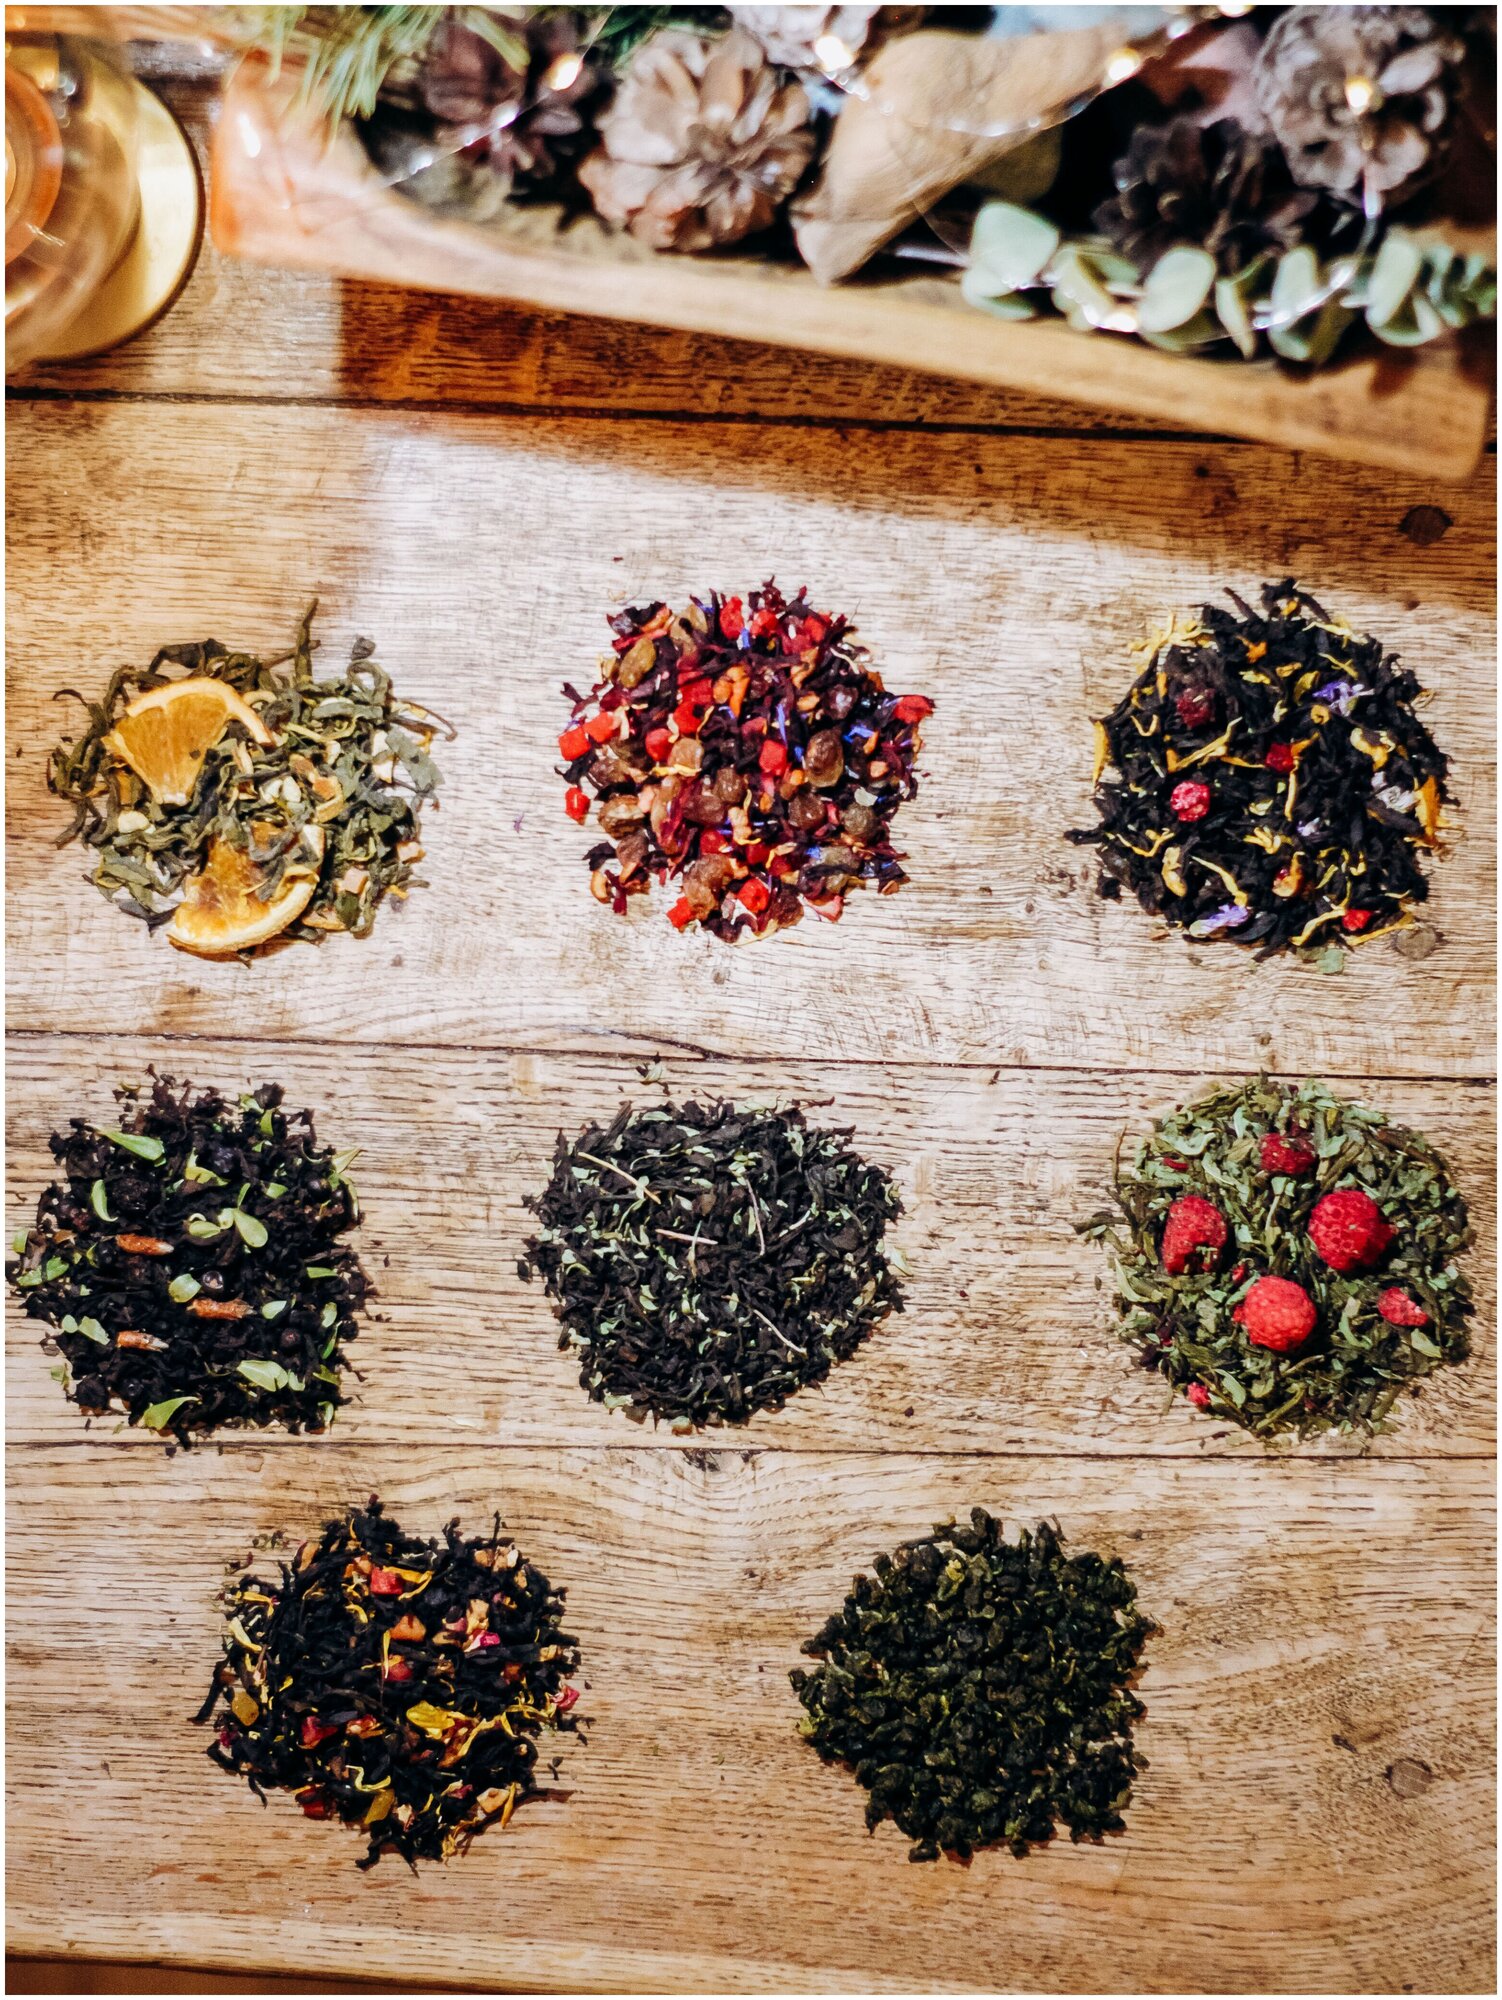 Подарочный набор чая / 8 видов чая, Gimini food group (Зеленый чай, Чай листовой черный) подарок на на 14 февраля, 23 февраля, 8 марта - фотография № 8